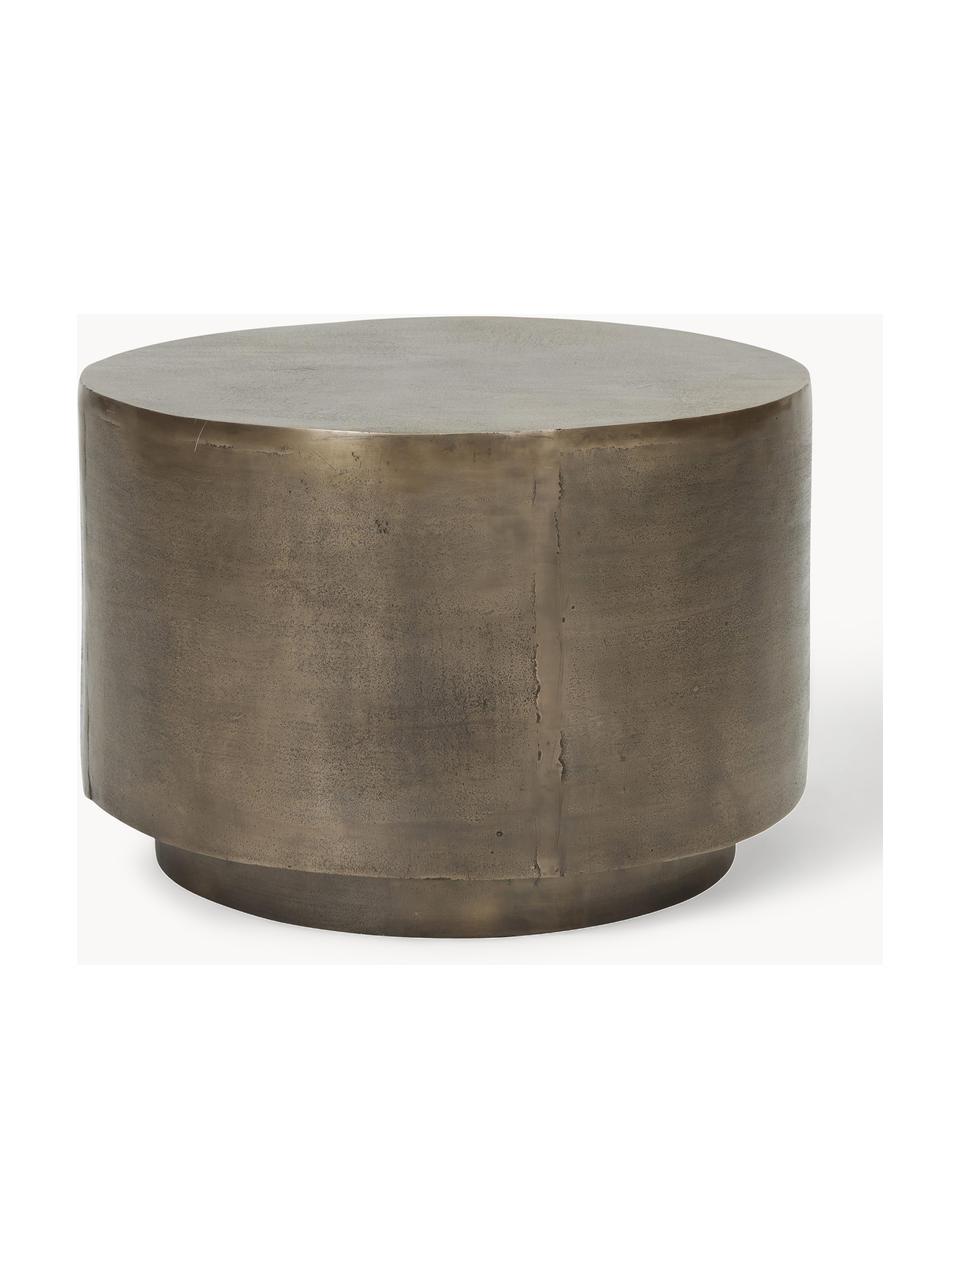 Okrągły stolik pomocniczy z metalu z efektem postarzania Rota, Aluminium powlekane, płyta pilśniowa średniej gęstości (MDF), Greige, odcienie złotego, Ø 50 cm